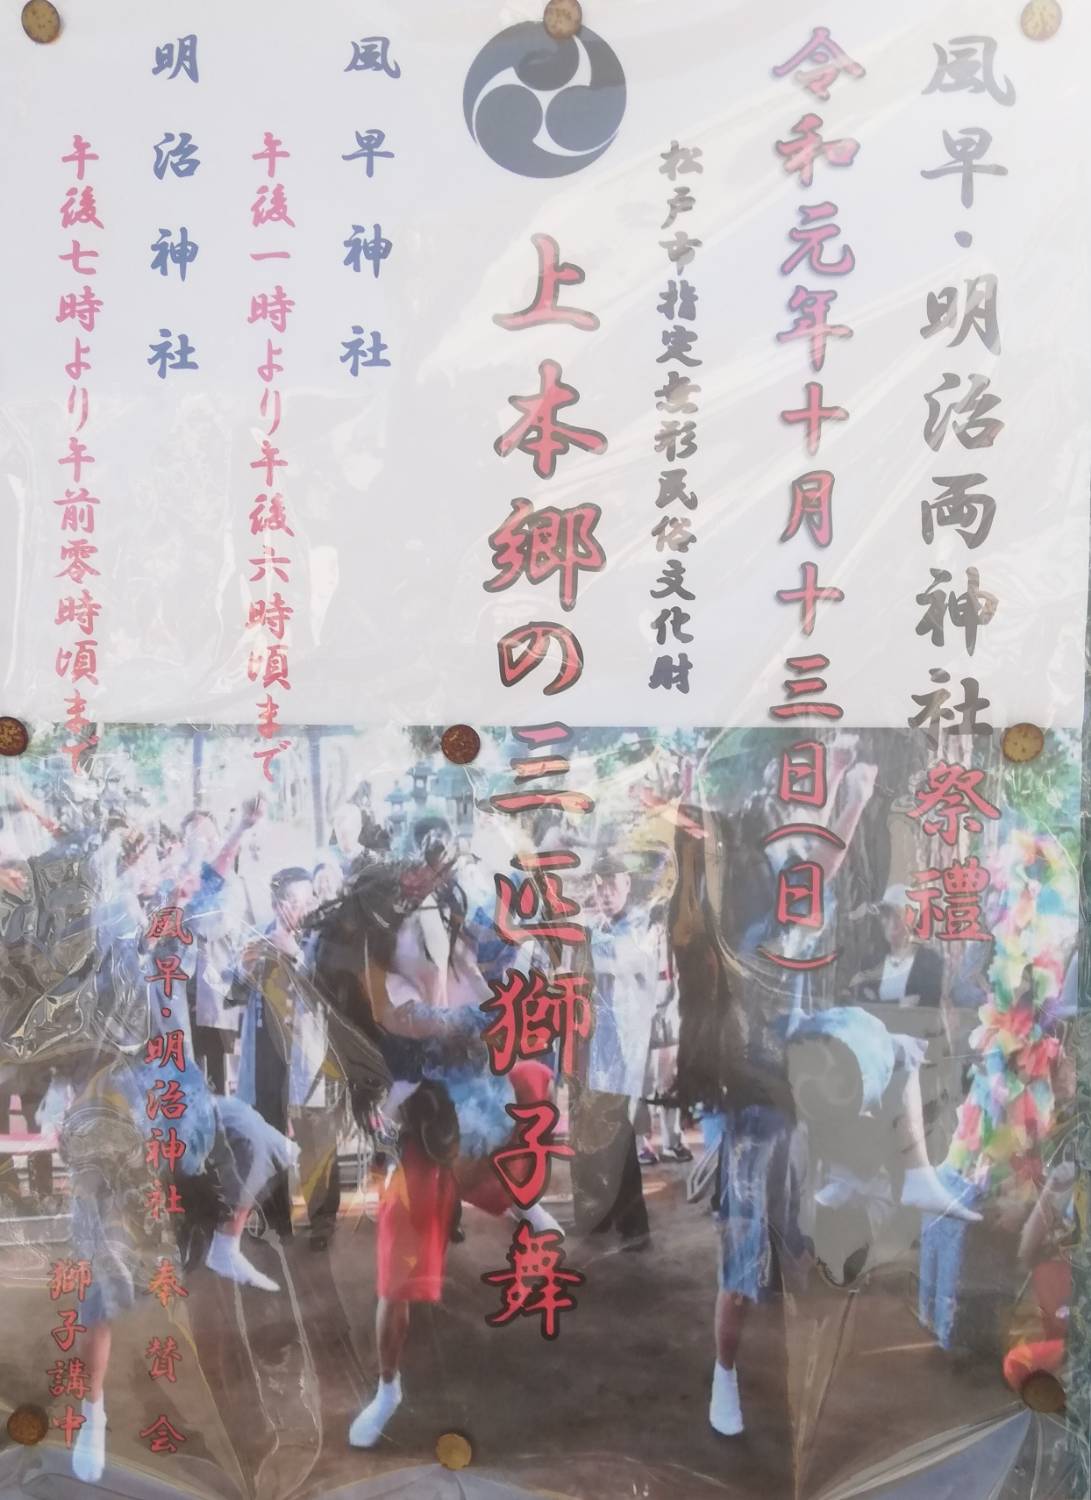 上本郷の三匹獅子舞、風早神社、松戸明治神社